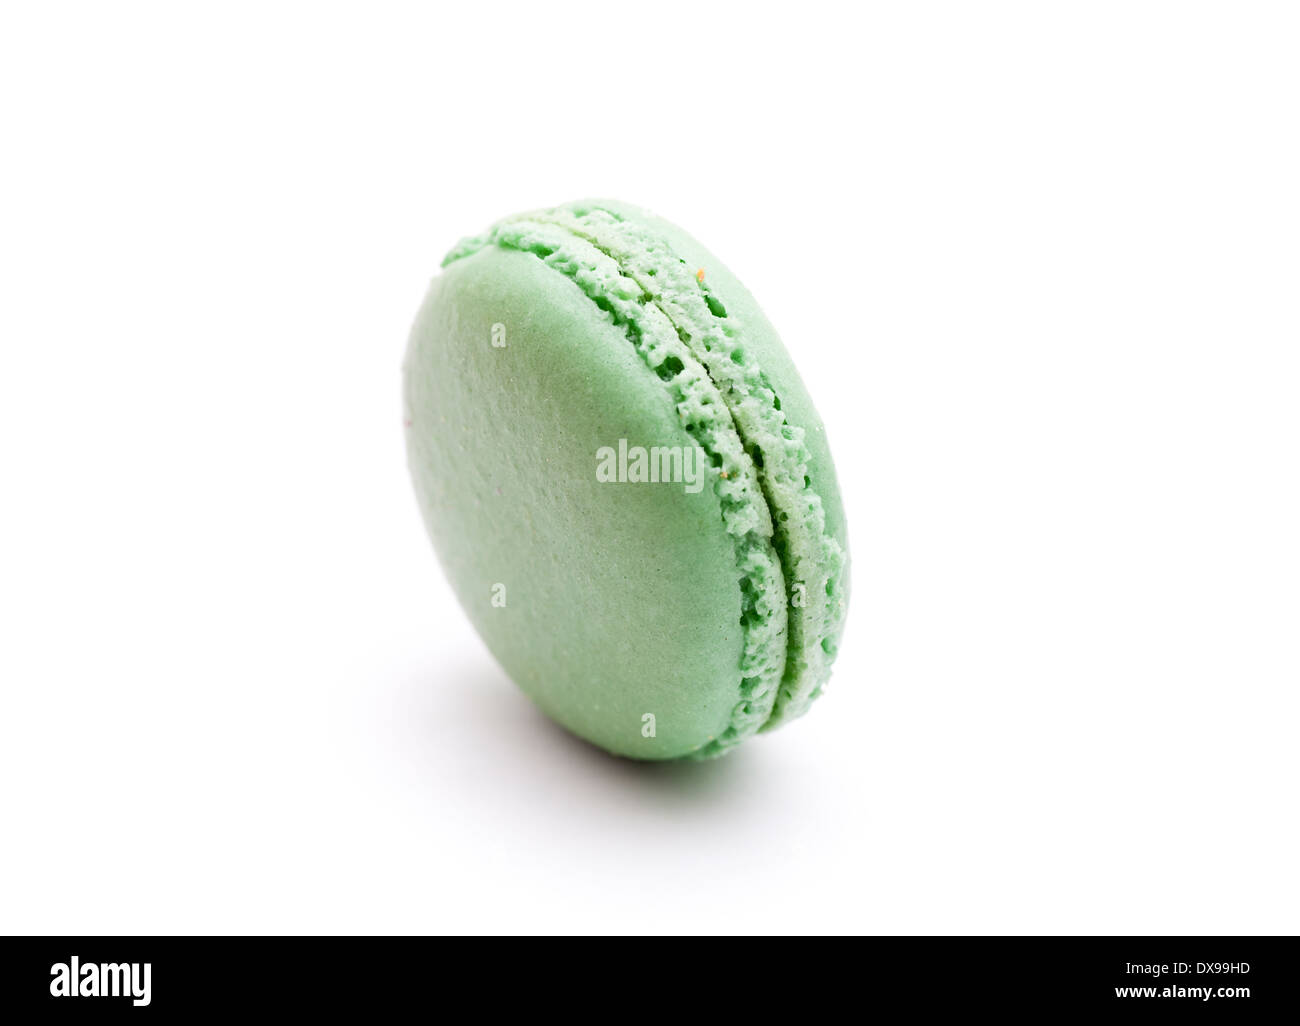 Green macaroon on white Stock Photo